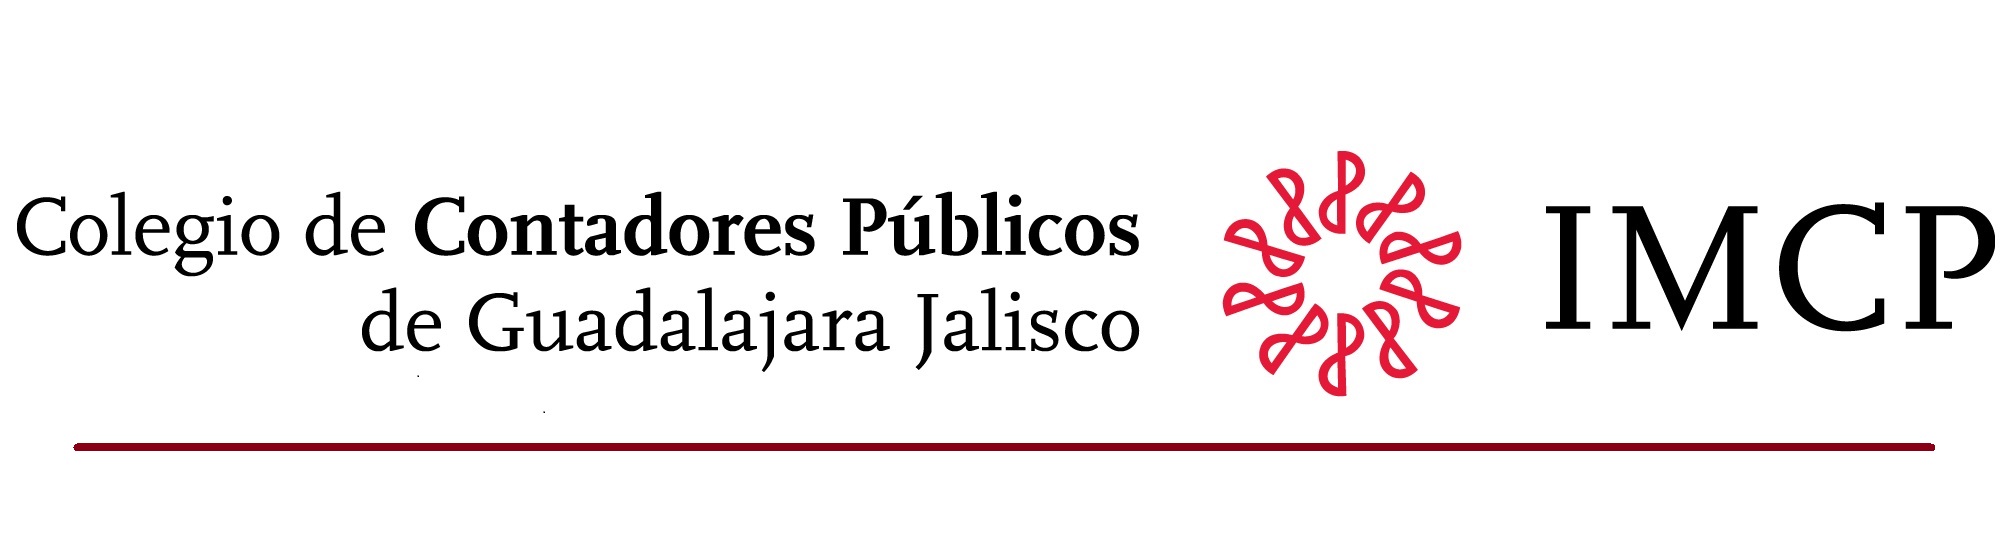 Colegio de Contadores P煤blicos de Guadalajara